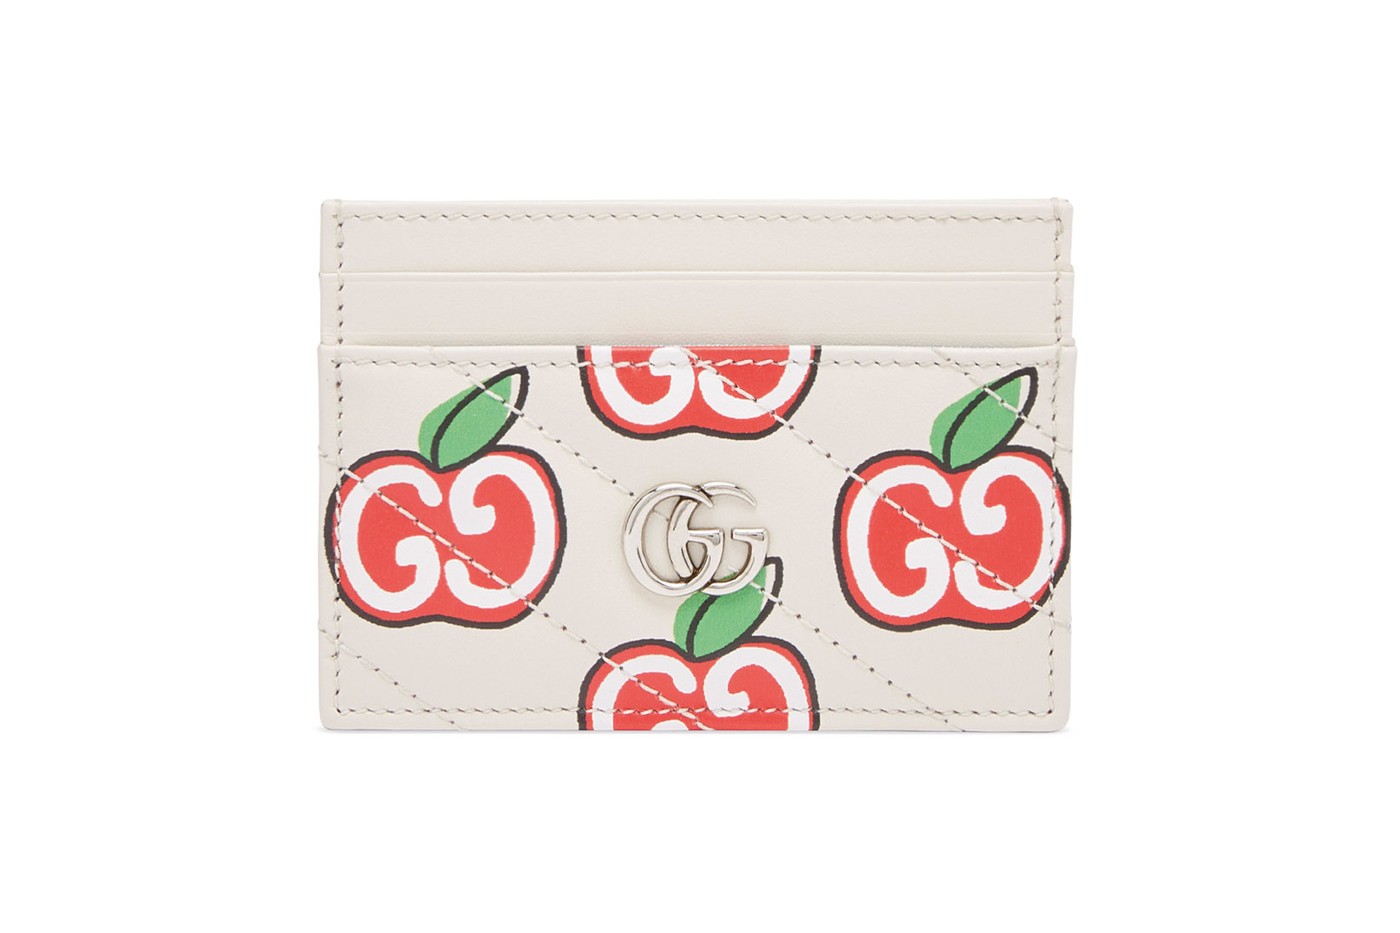 Gucci покрыл сумки принтом с яблоками в честь китайского Дня всех влюбленных (фото 11)